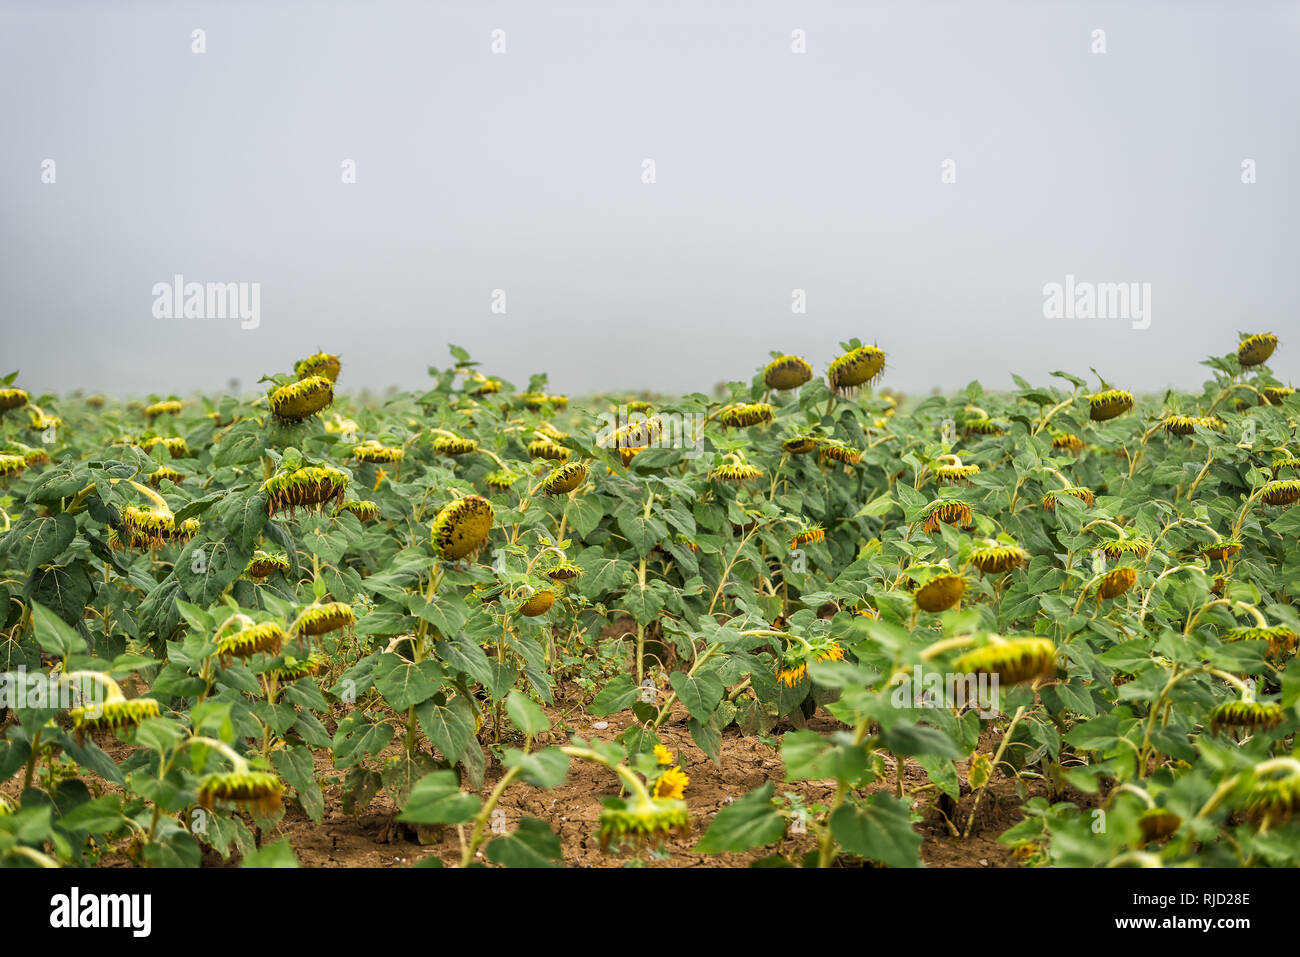 Viele große Blütenkorbes Blume reif für die Ernte in der Landwirtschaft Bauernhof Feld am Morgen Nebel Nebel dunkle Wetter Stockfoto